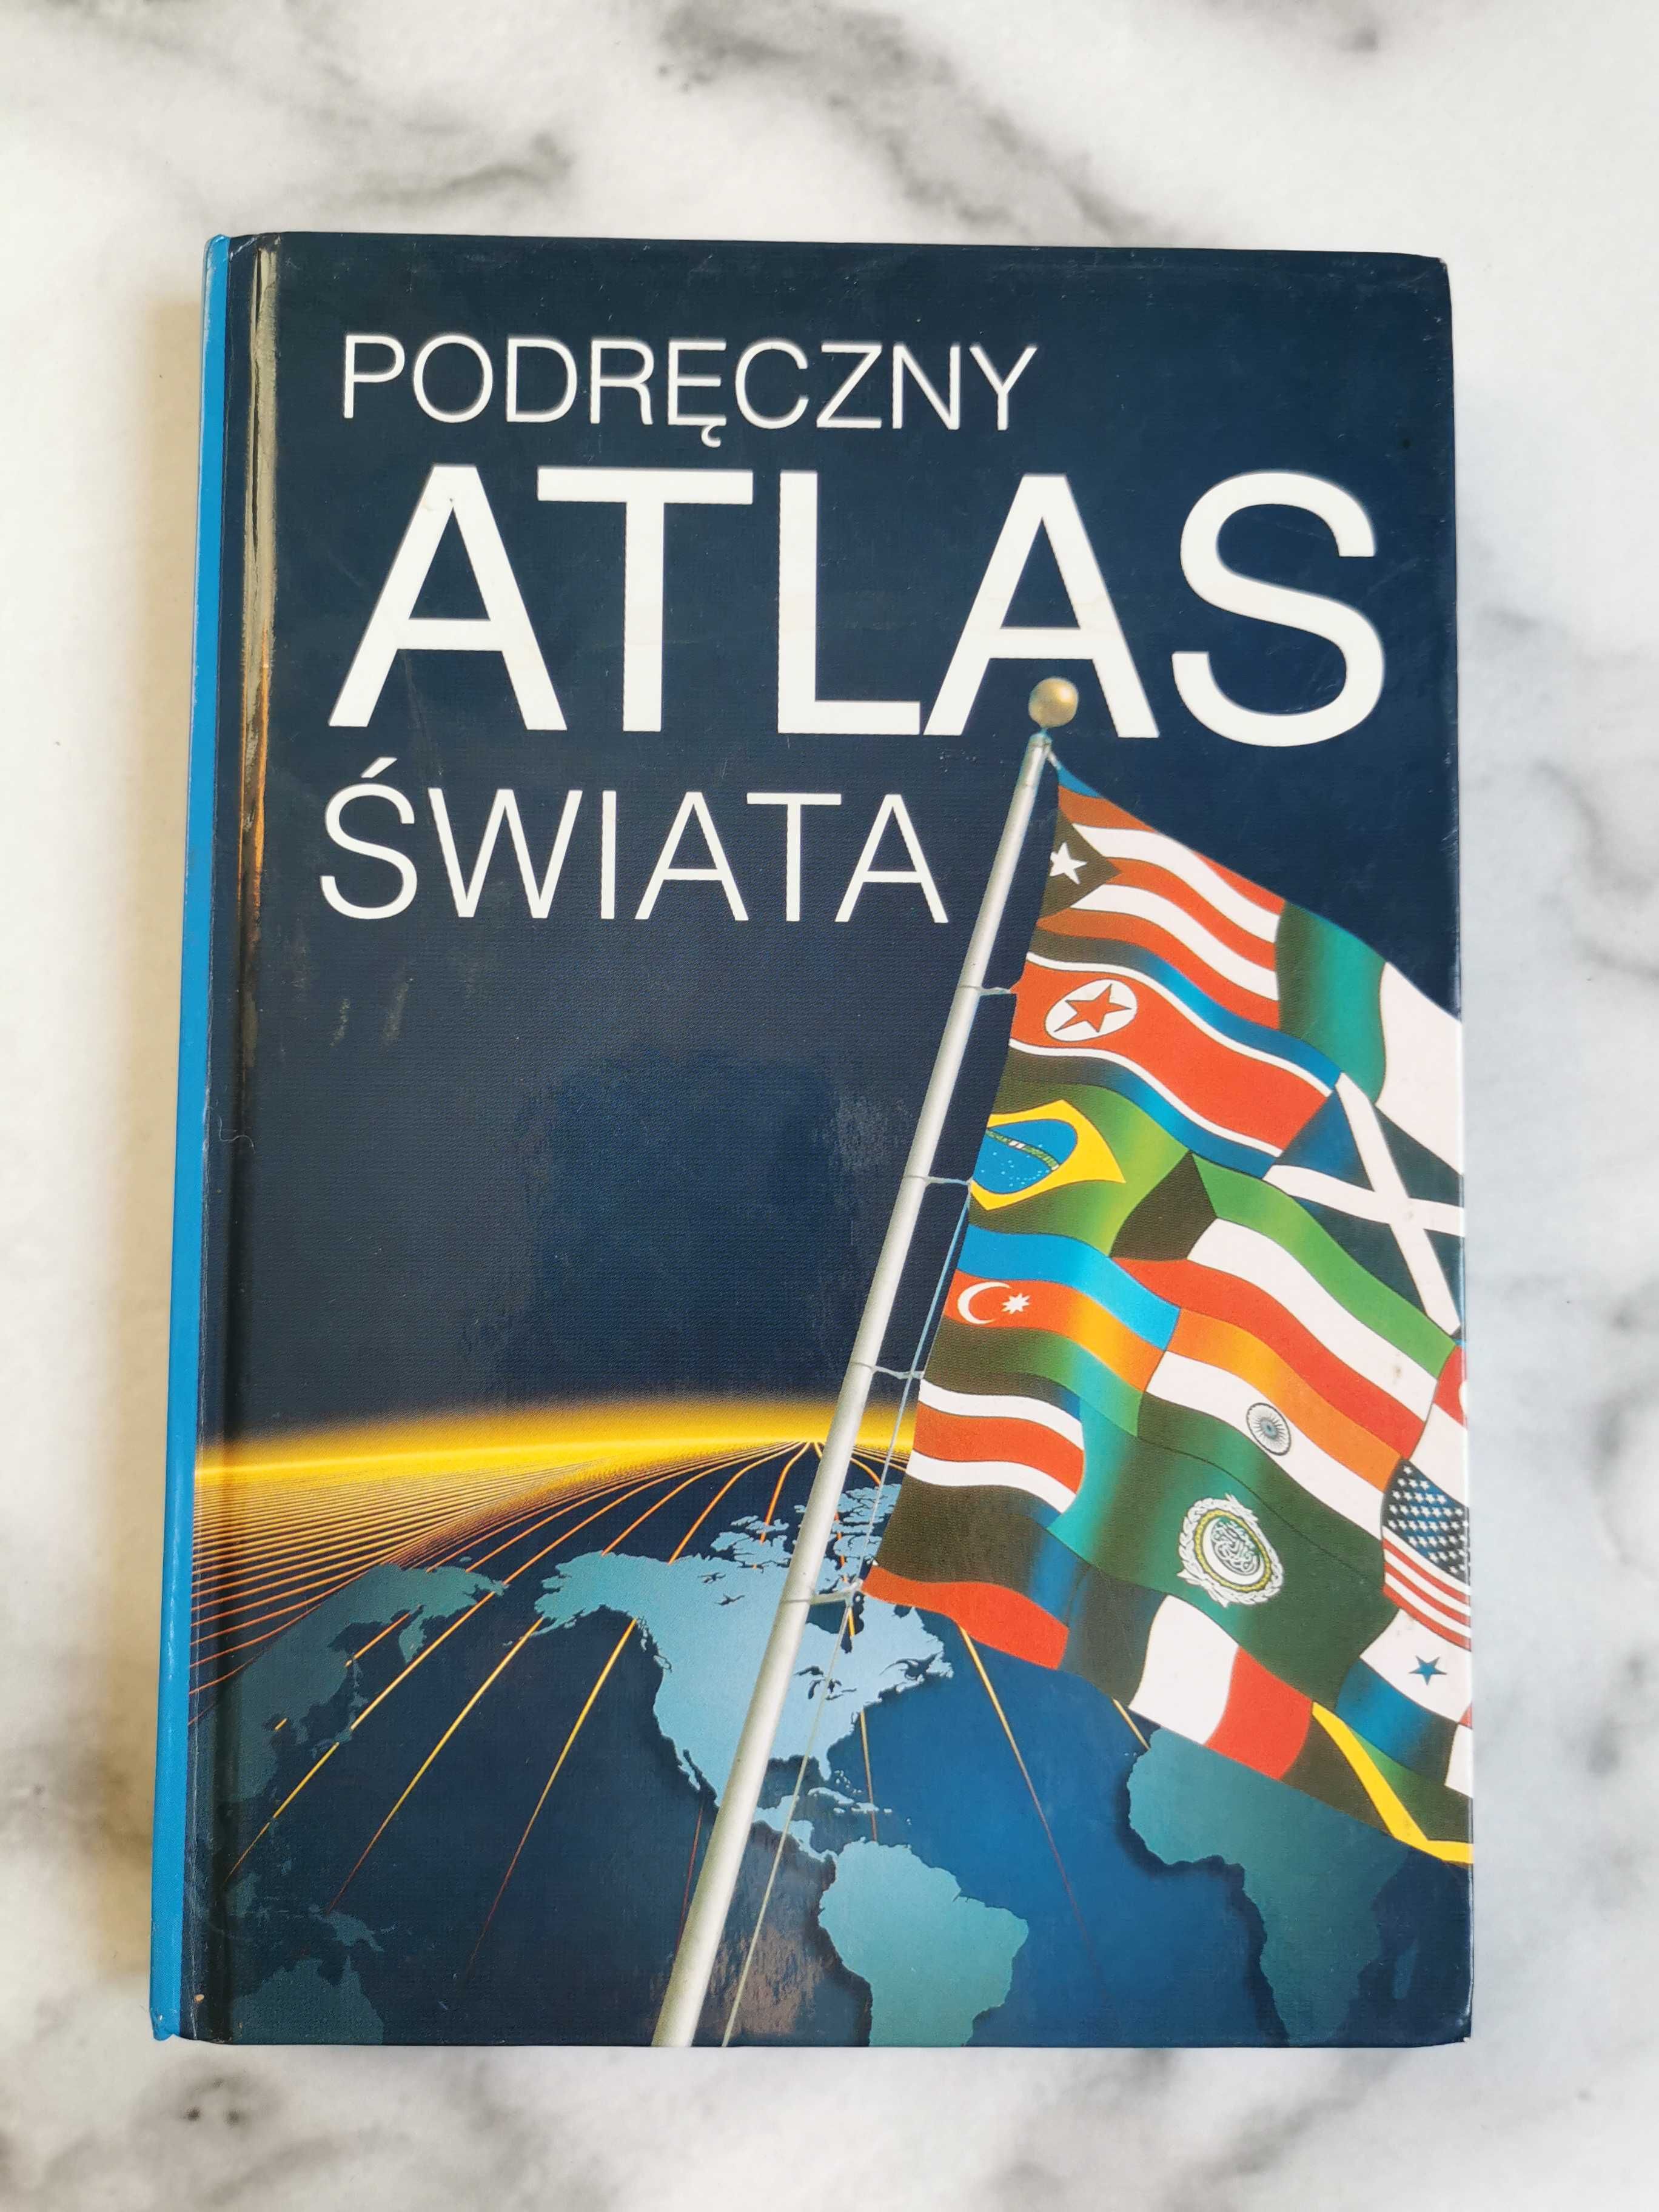 Podręczny atlas świata, Henryk Górski, Stanisław Postek